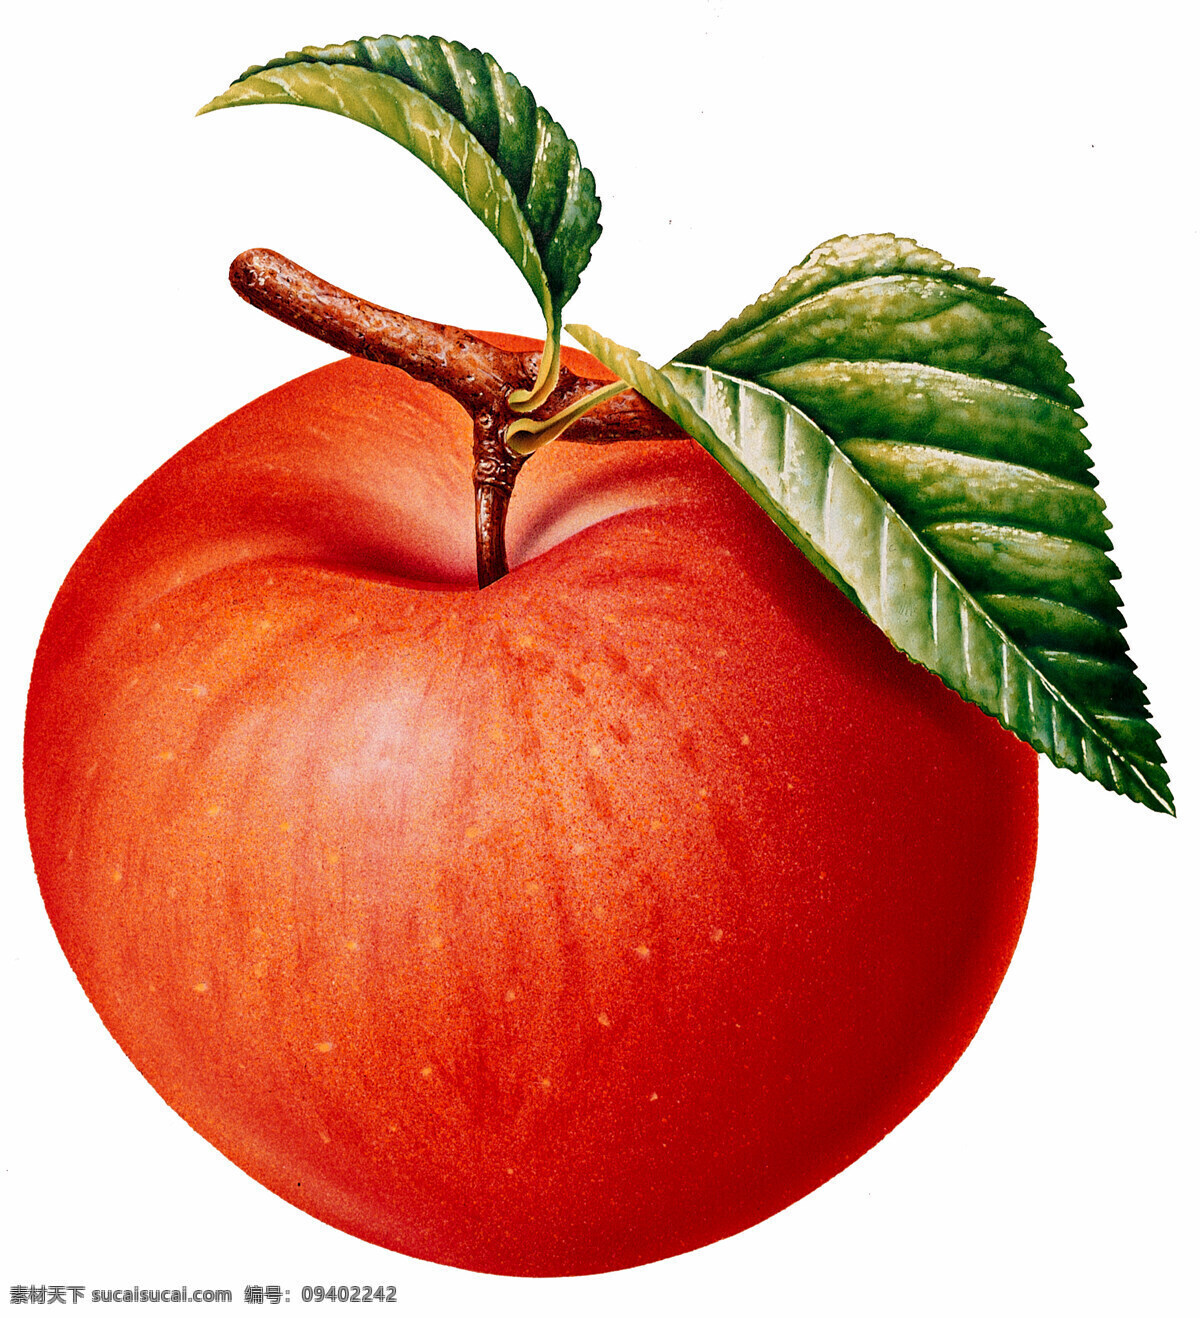 红苹果 特写 插画红苹果 带叶苹果 成熟苹果 插画集